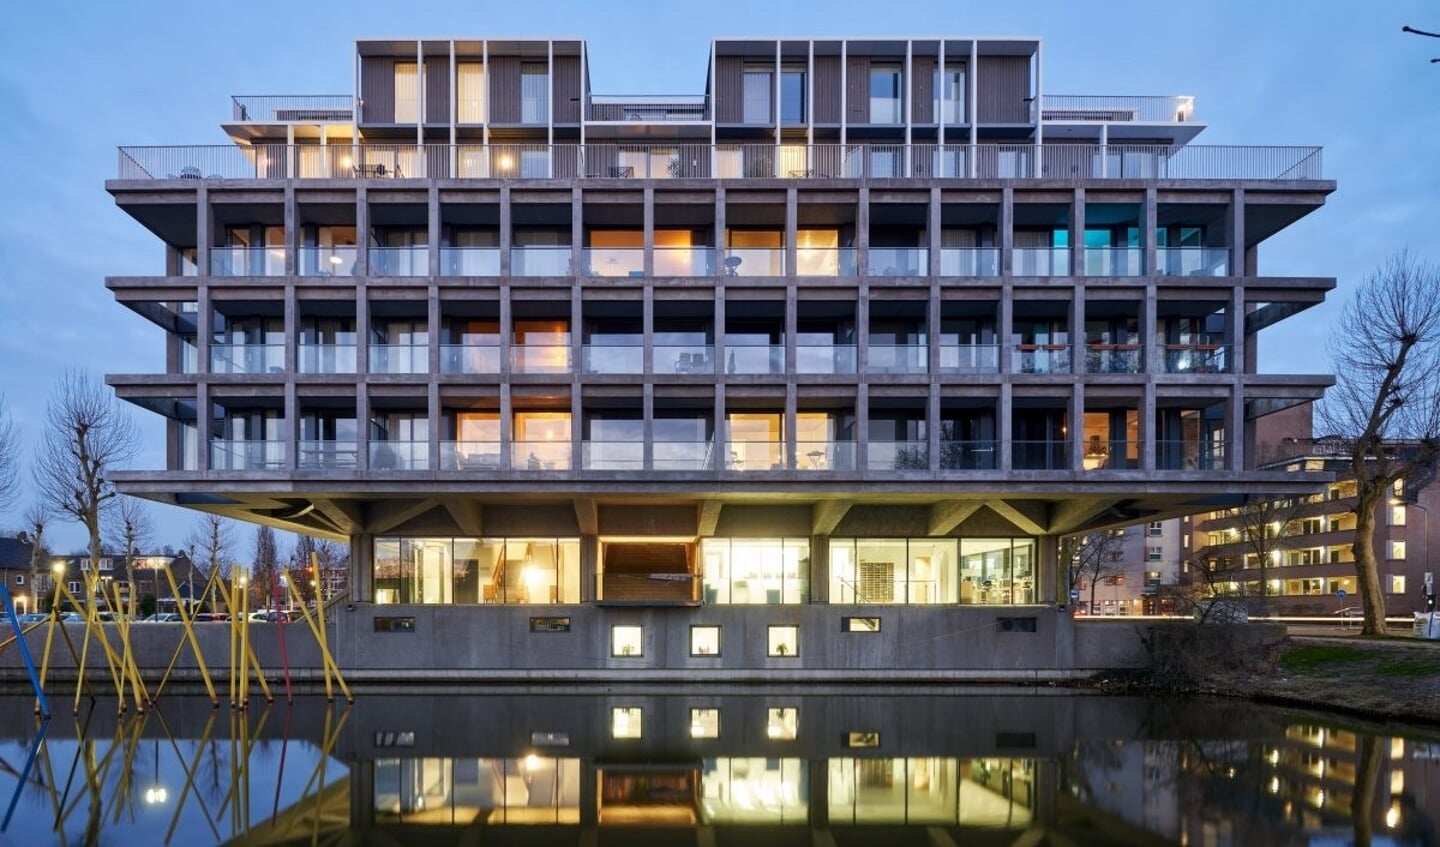 In de categorie Groot ging de tweede plek naar Transformatie Rijkswaterstaat, een ontwerp van Houben & Van Mierlo Architecten.